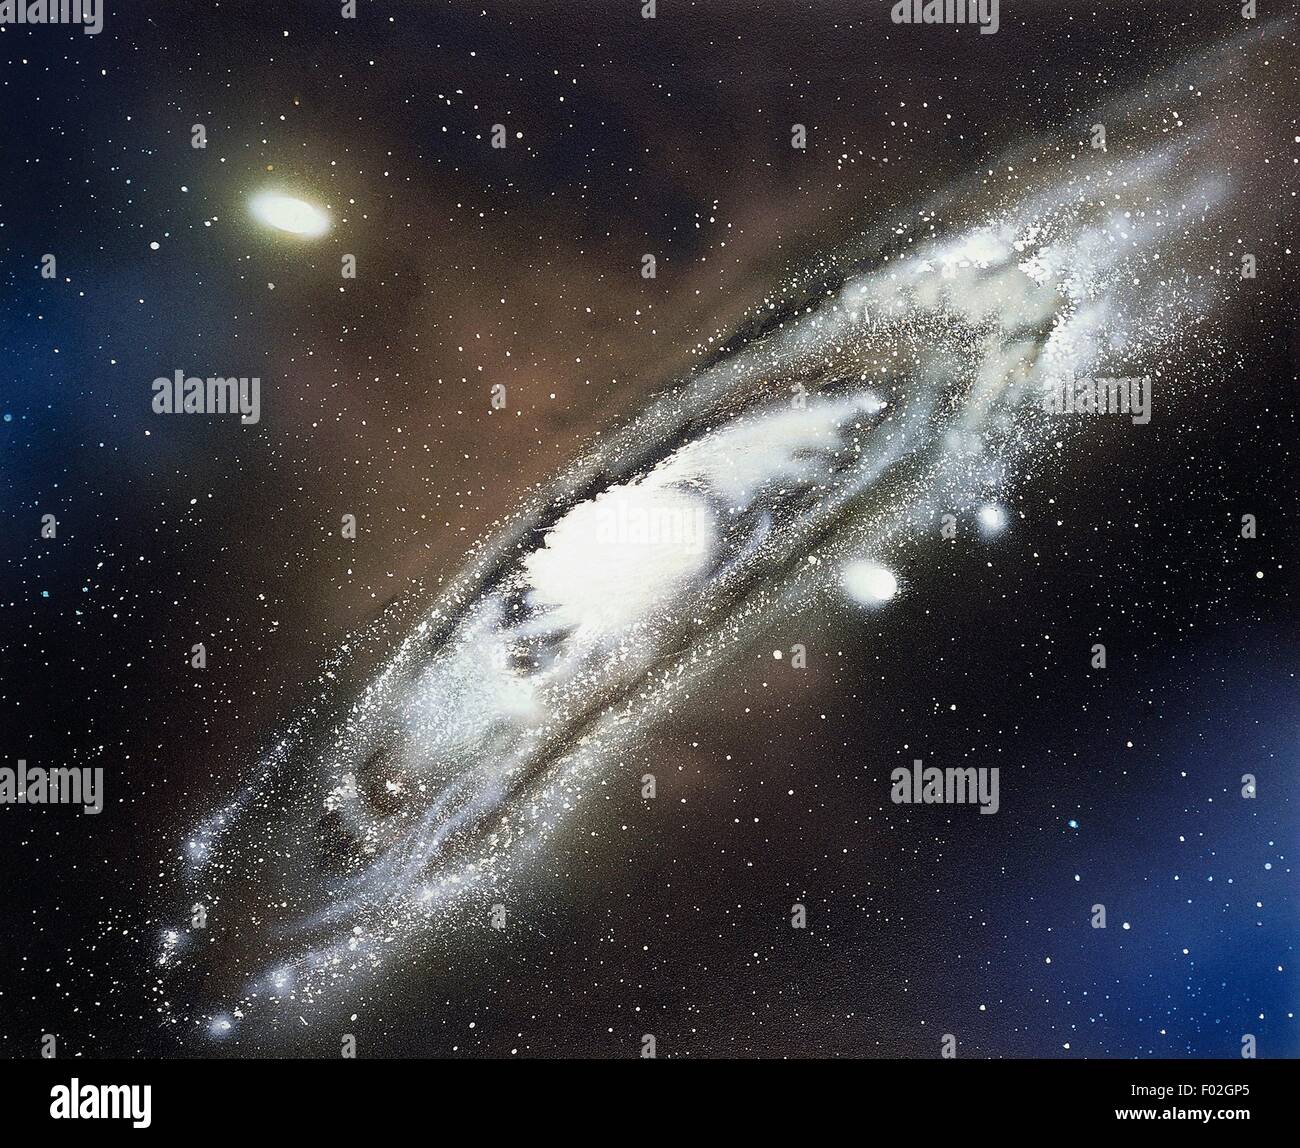 Galaxia Andrómeda (M 31), una galaxia espiral con dos pequeñas galaxias satélite. Dibujo. Foto de stock